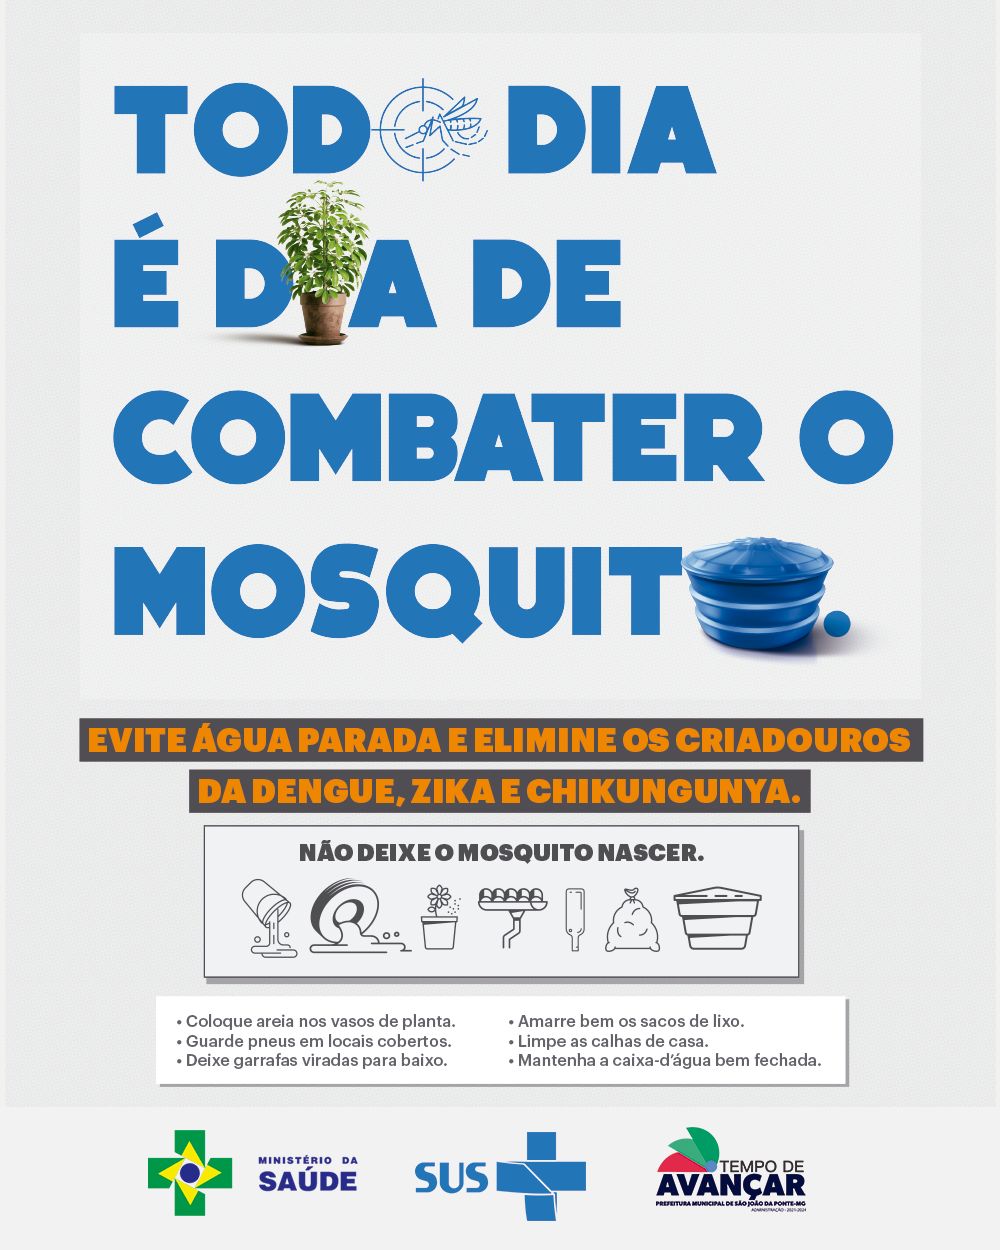 “Uma pequena atitude, pode fazer uma grande diferença na luta contra a dengue!”